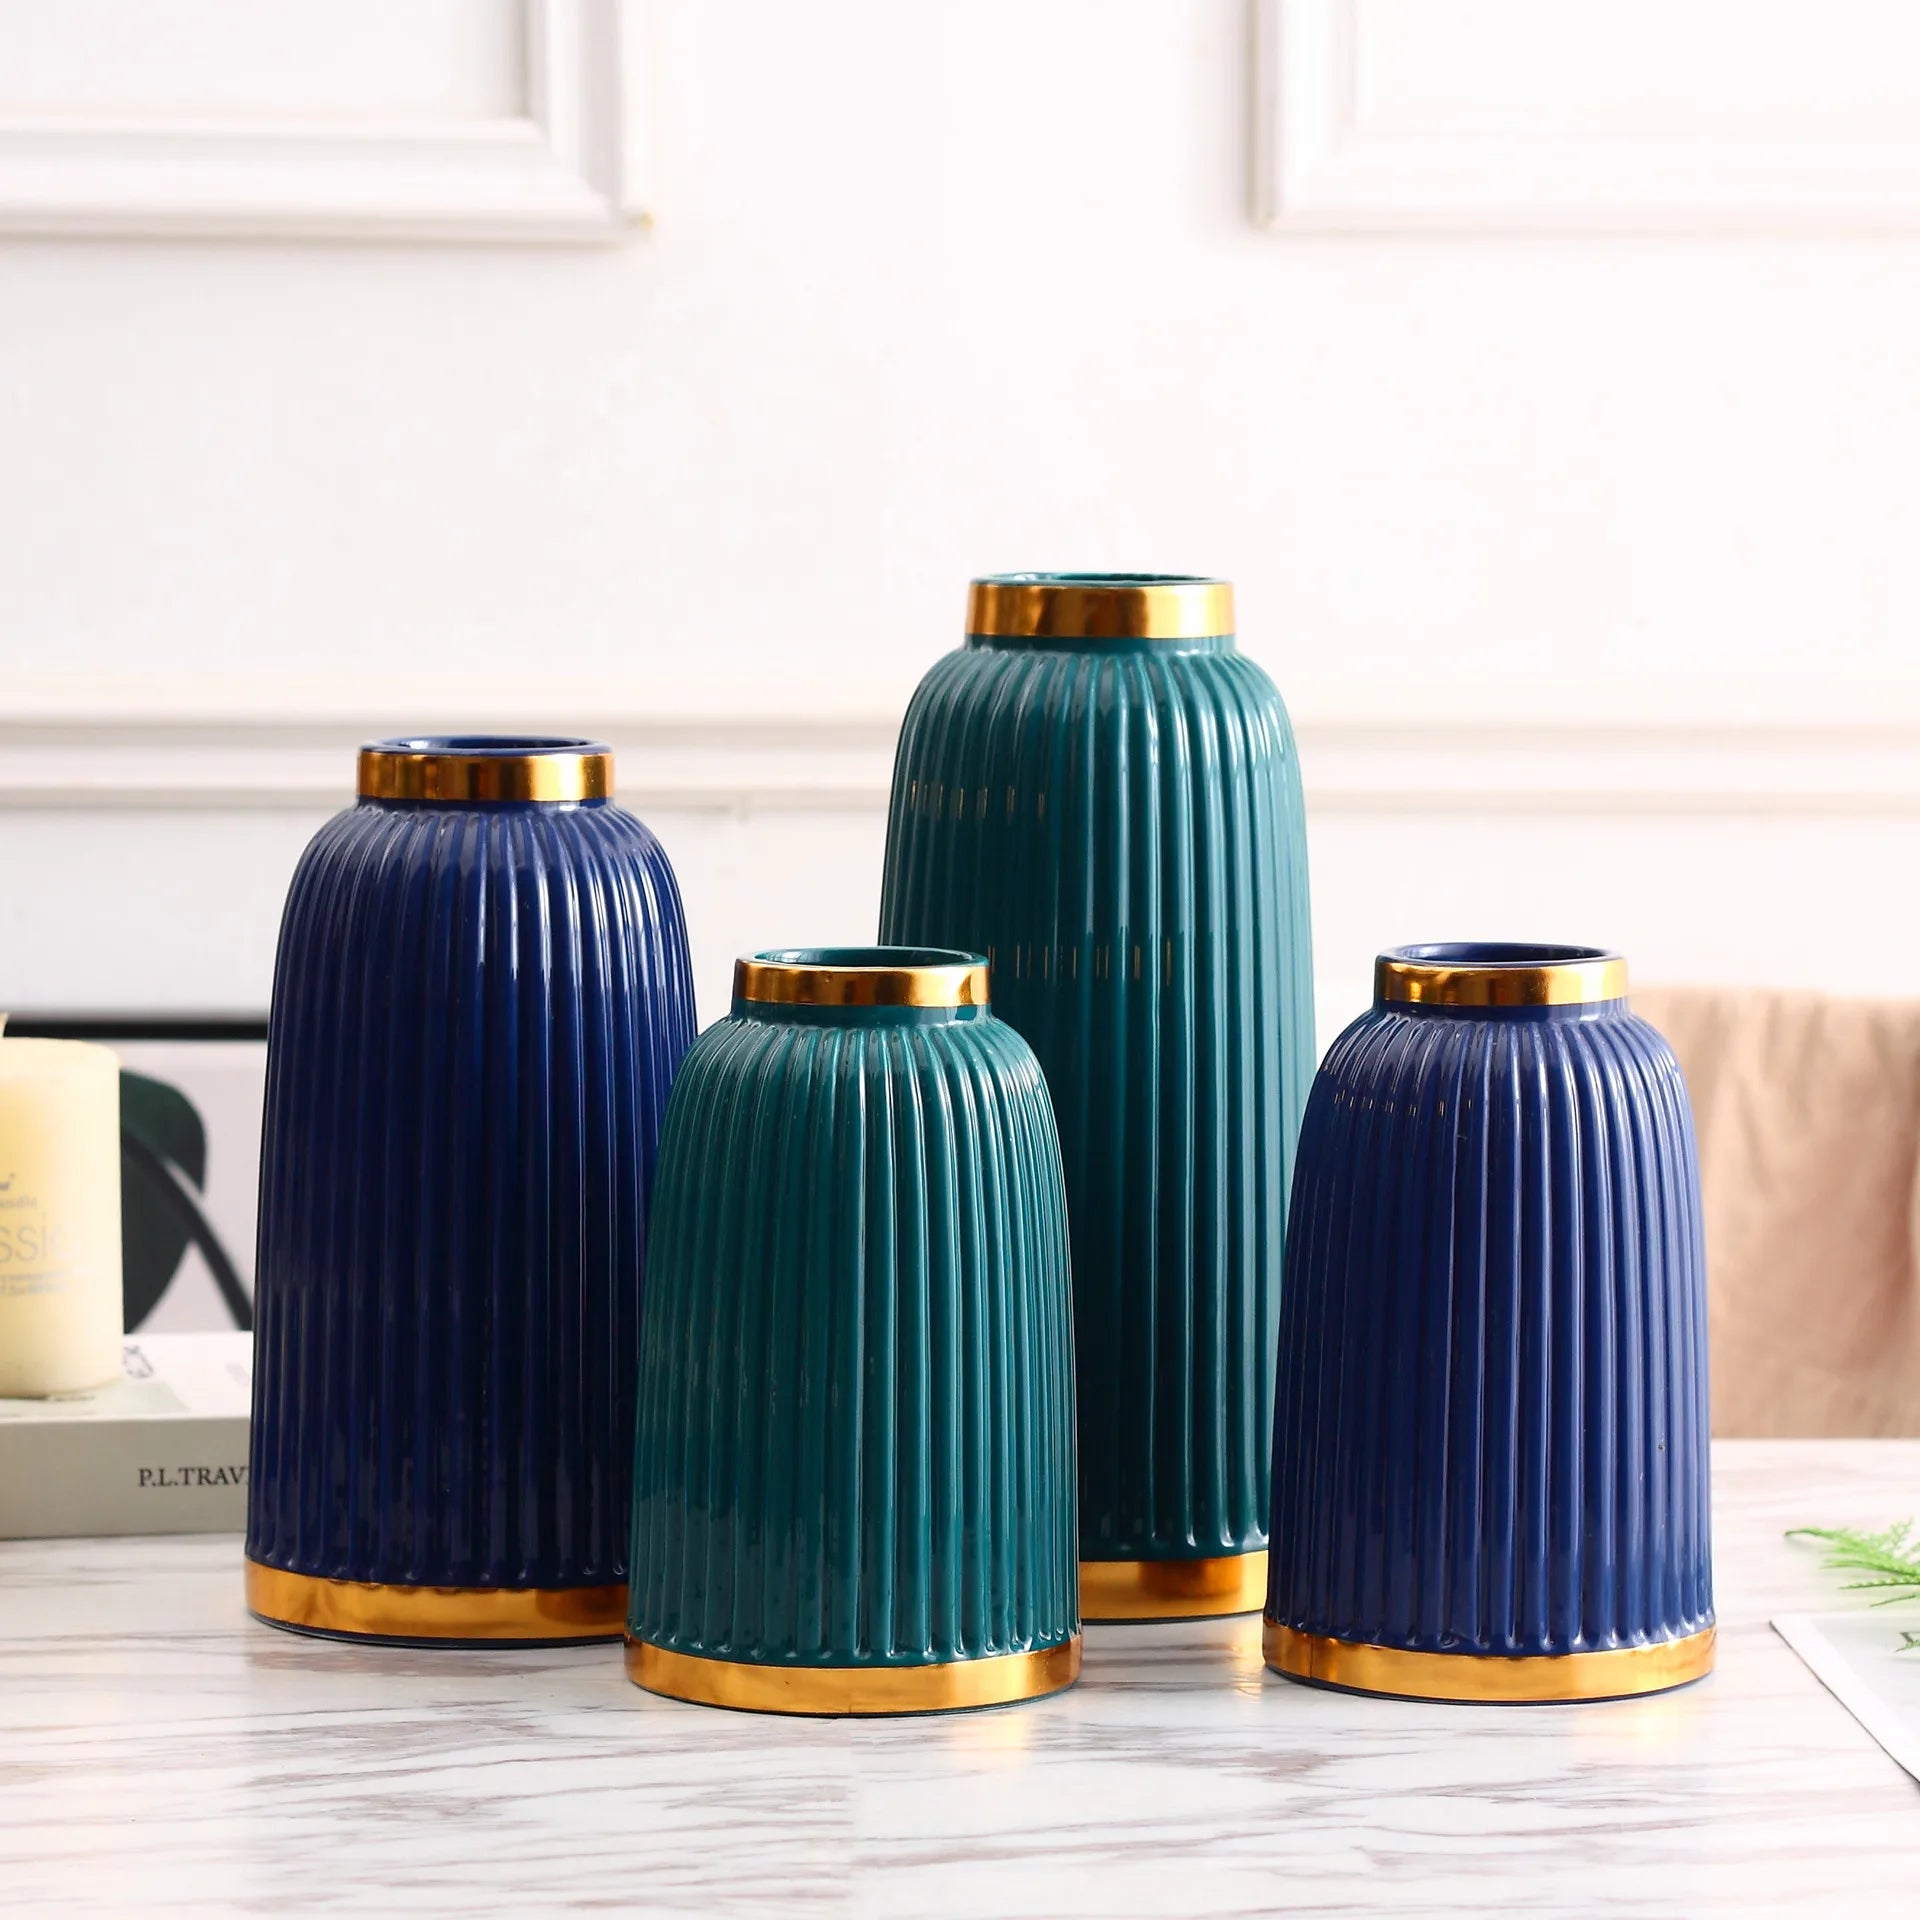 Moderne minimalistiske keramiske vaser sat i hvidt, tibetansk blå og grønt - tilbehør til boligindretning til stuen